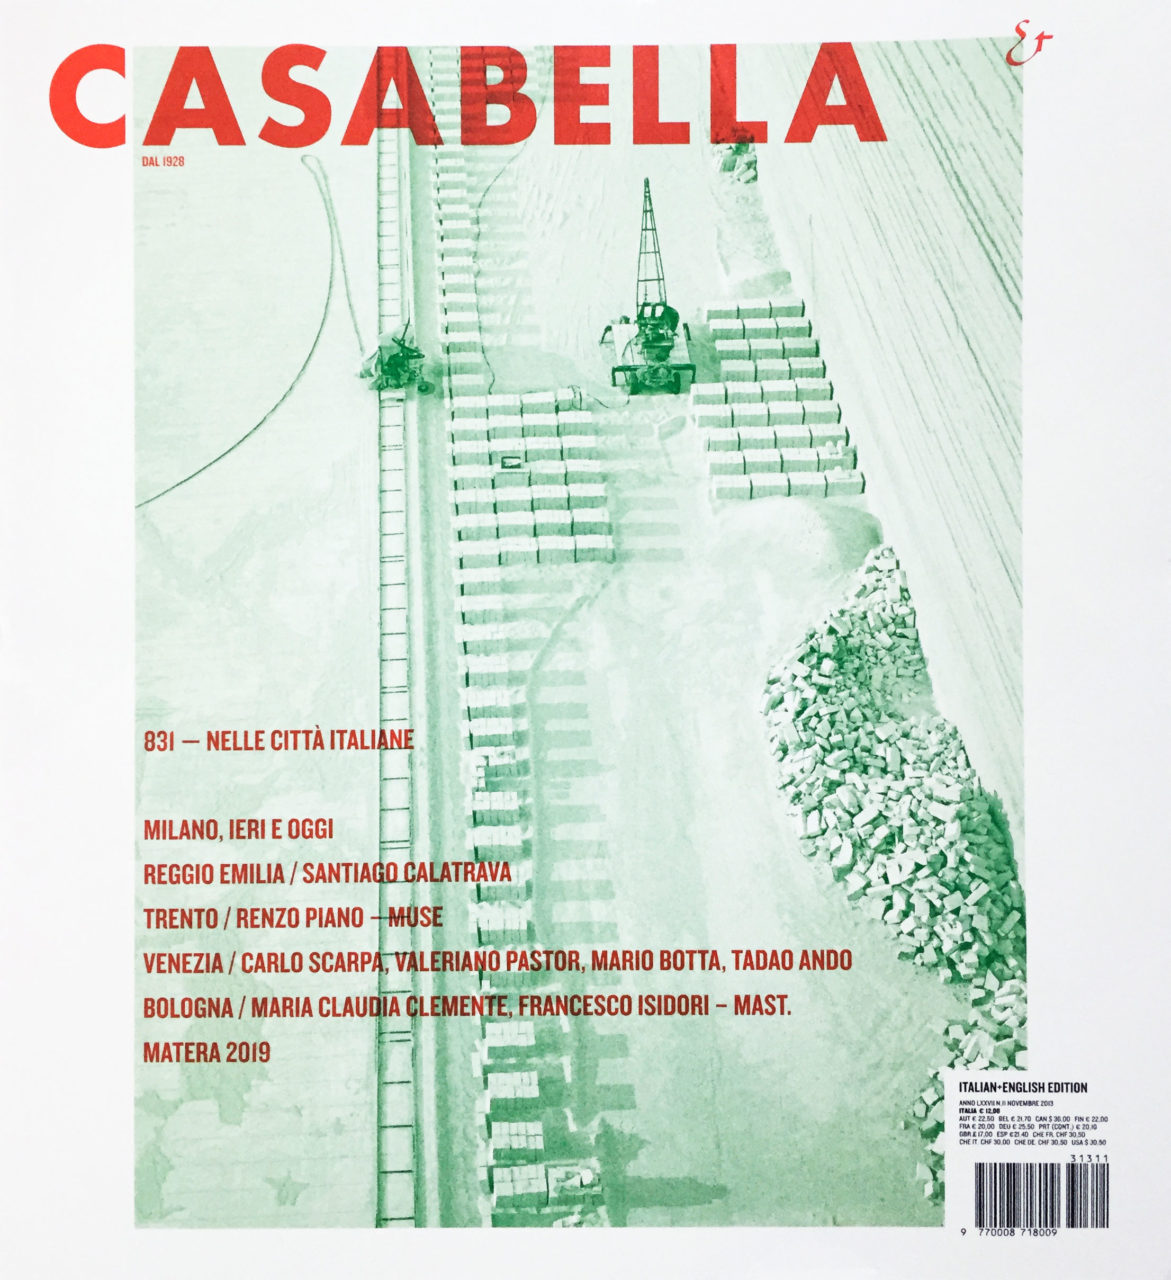 Casabella 831